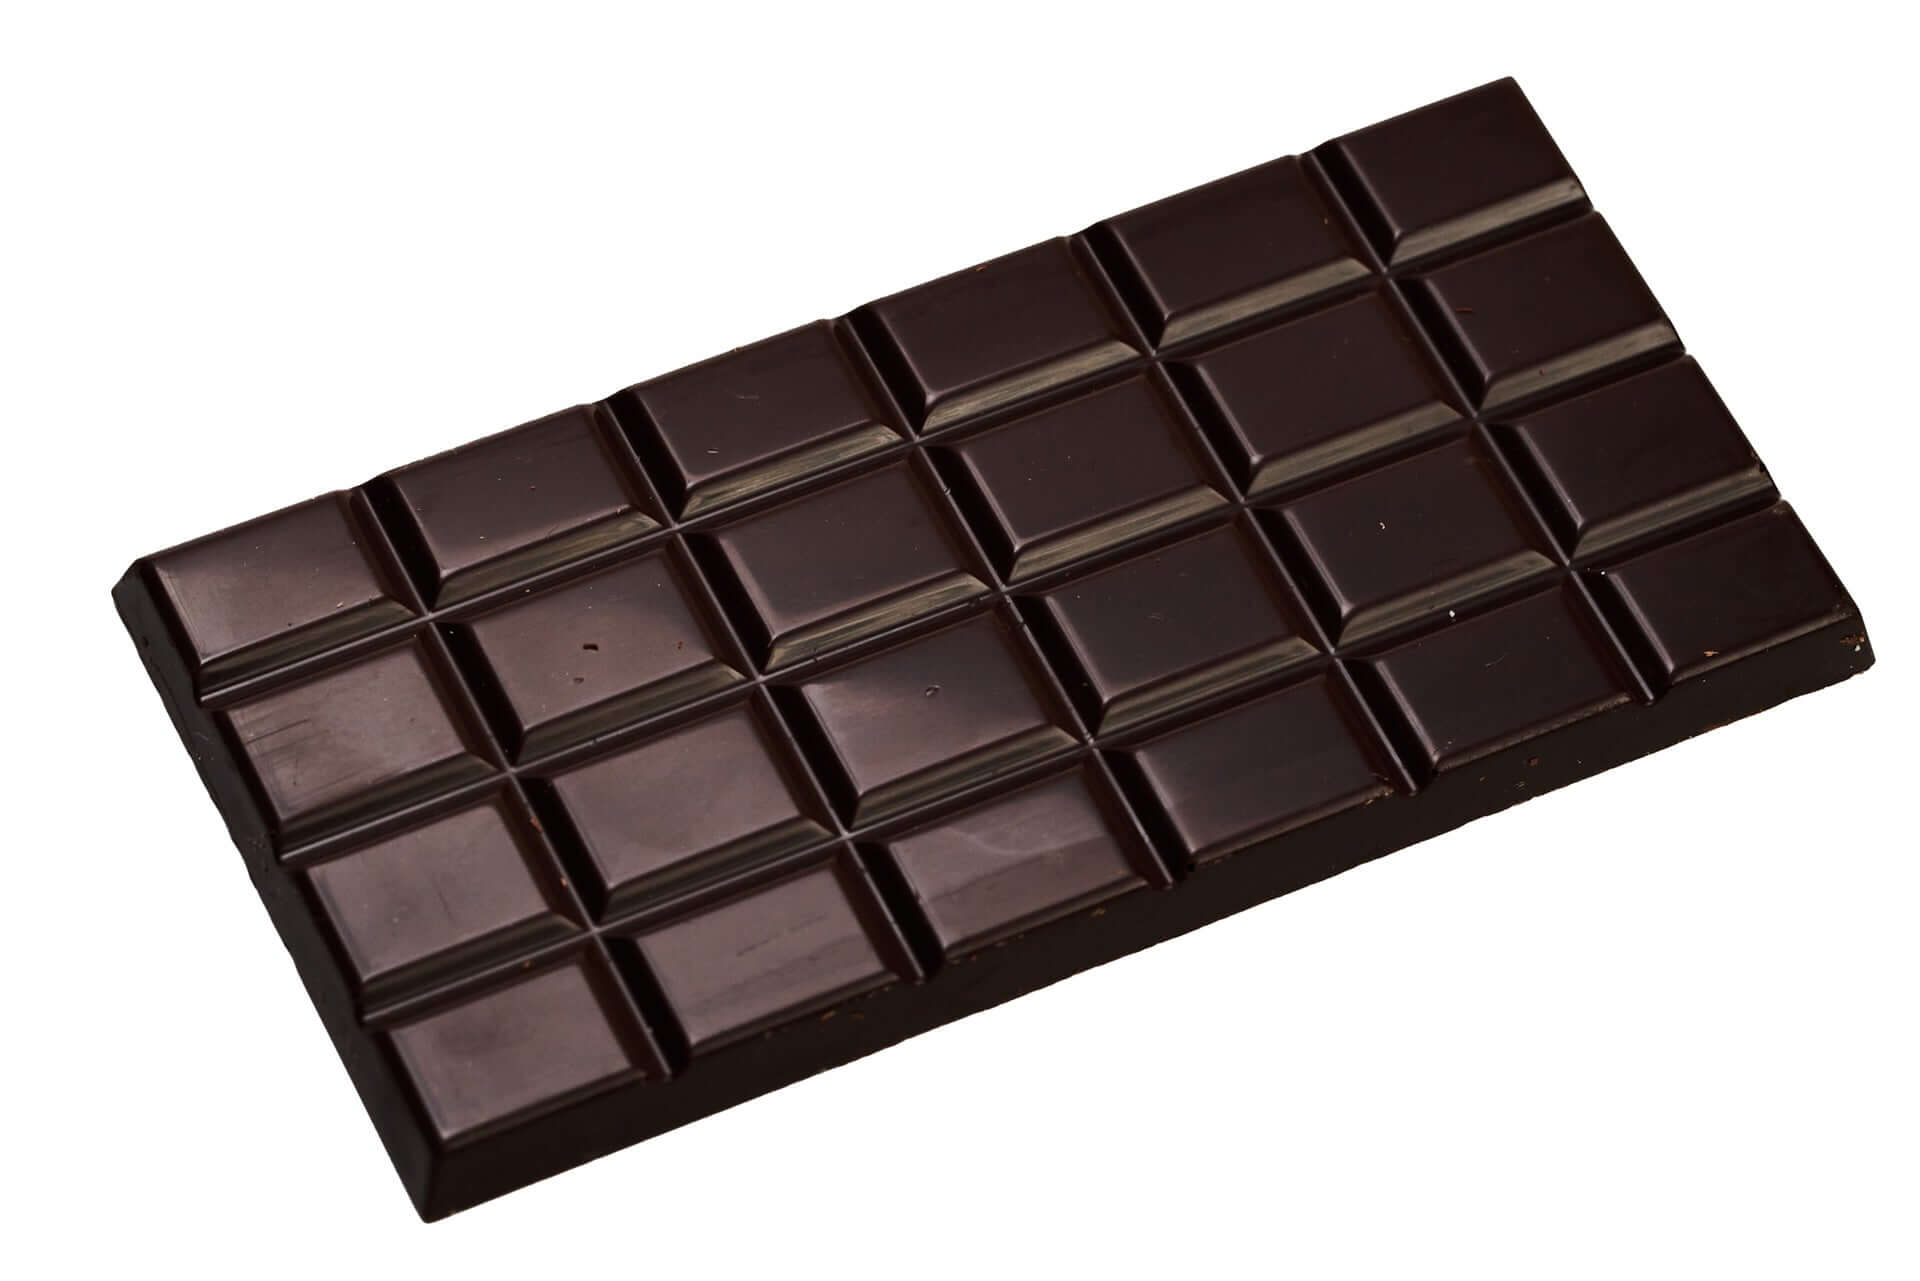 Barre de chocolat l Chocolaterie artisanale en ligne